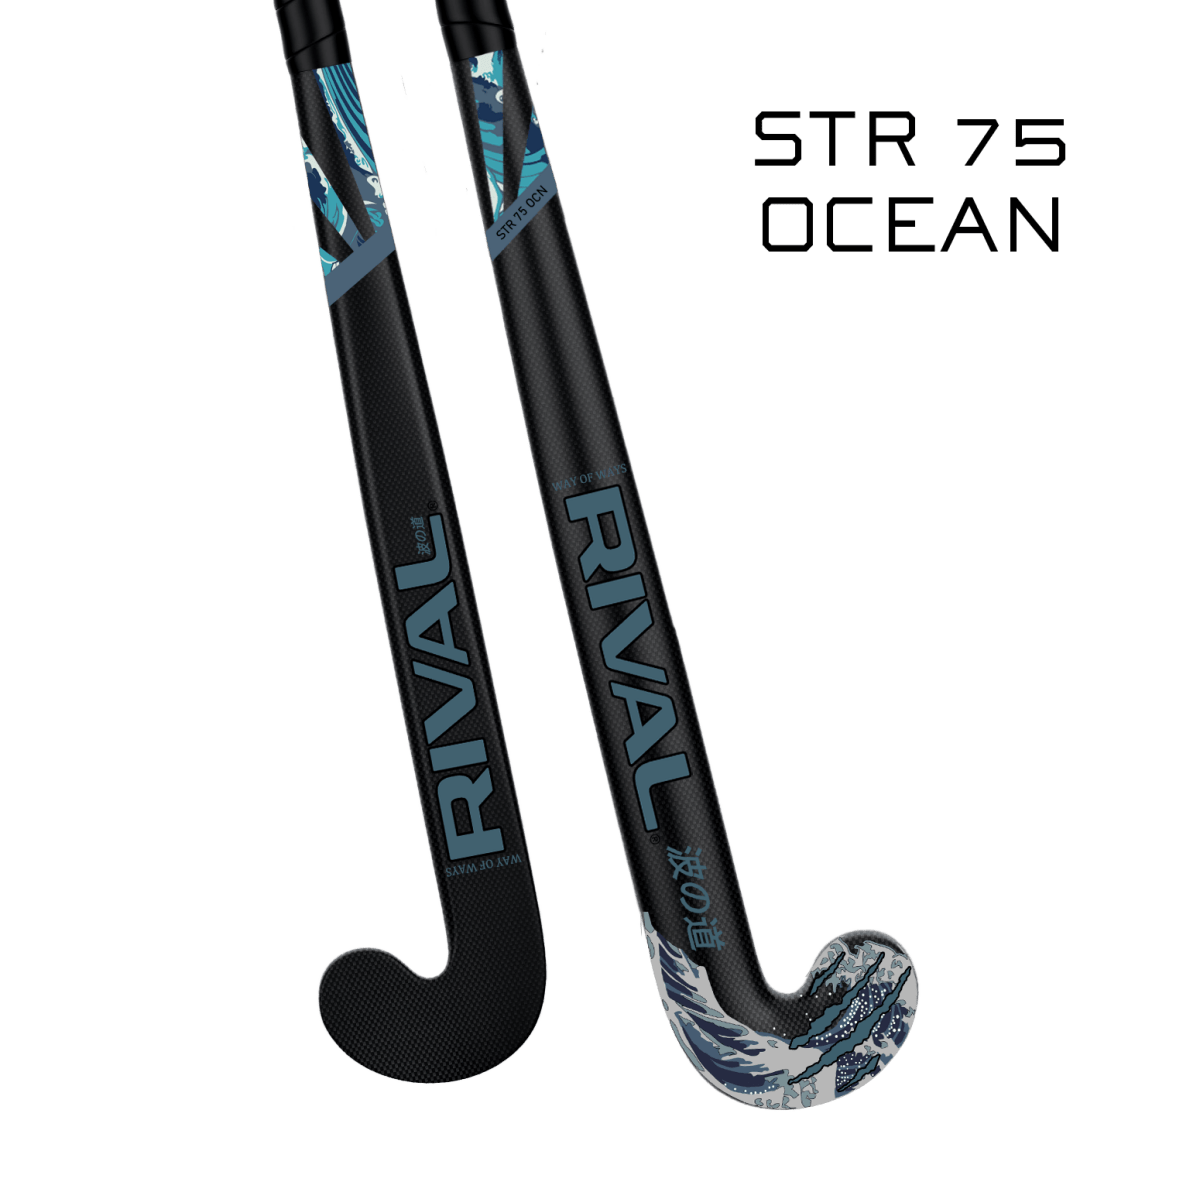 Rival STR 75 Ocean - field hockey